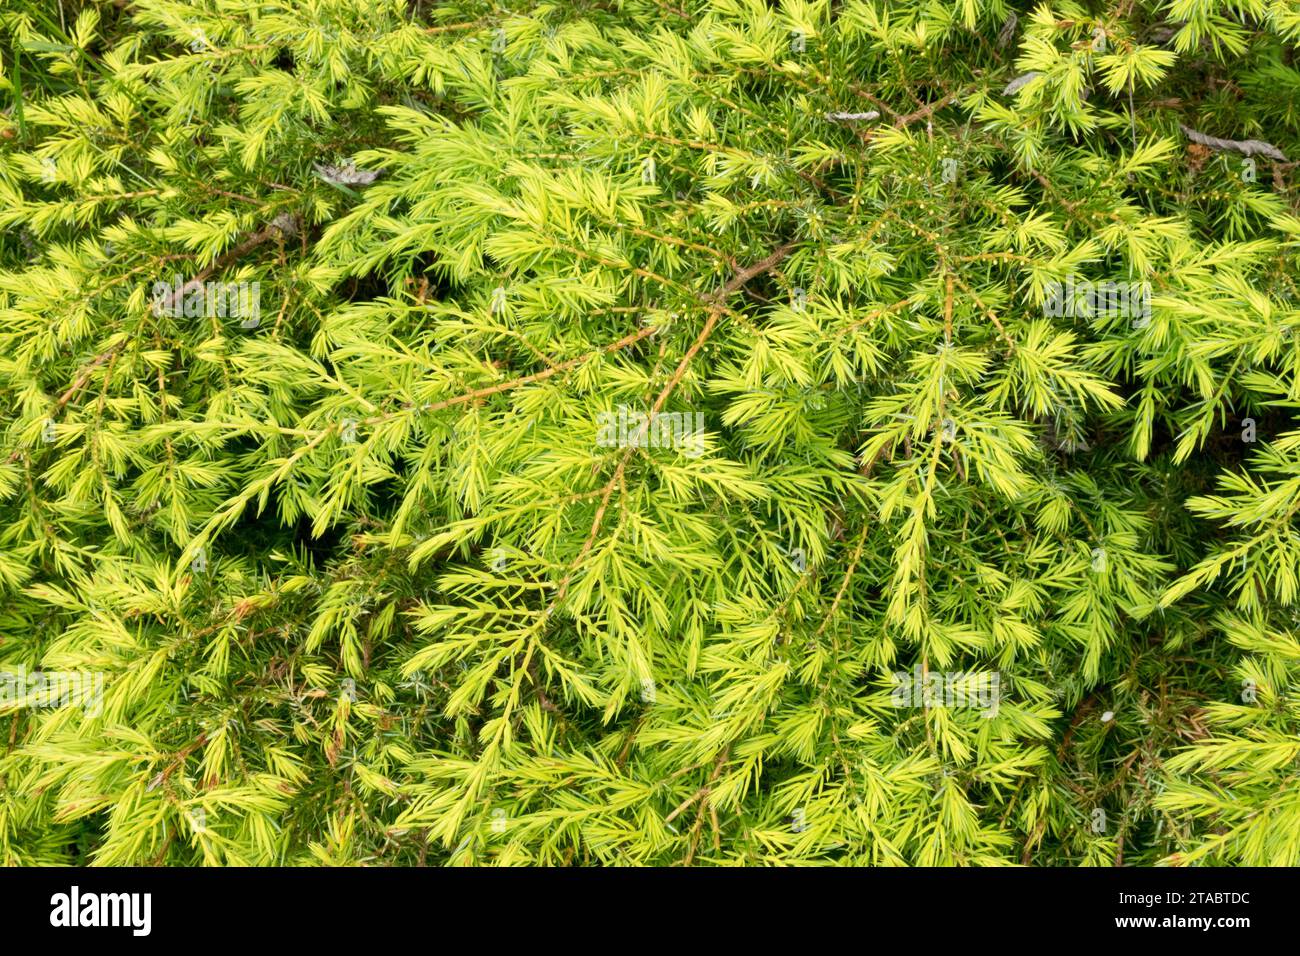 Common juniper, shrub, Juniperus communis, Needles, Golden and Yellow, Conifer, Gold, Juniperus communis 'Depressa Aurea' low, dense, Foliage of plant Stock Photo